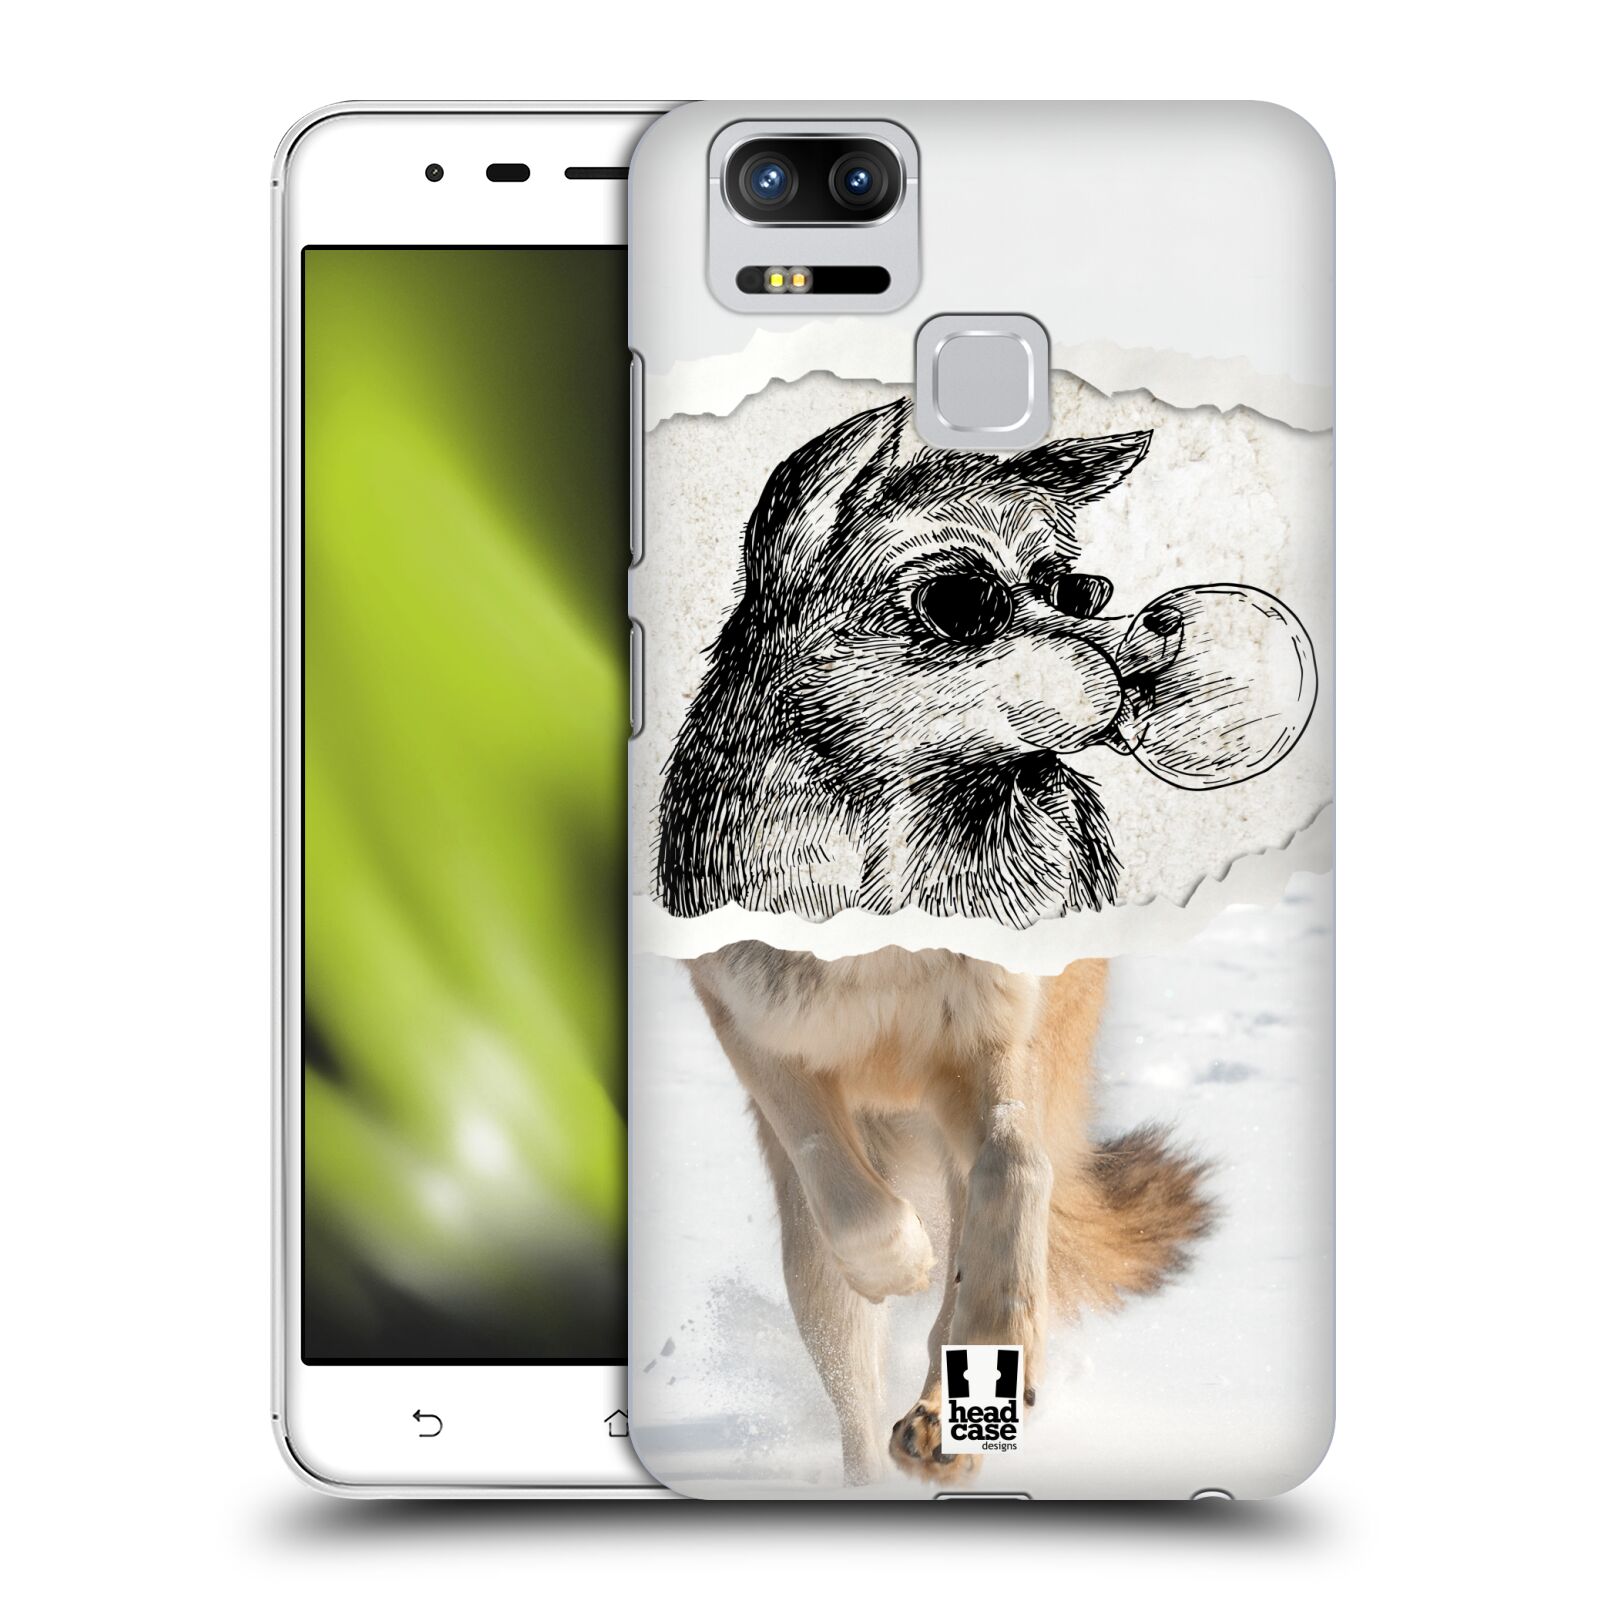 HEAD CASE plastový obal na mobil Asus Zenfone 3 Zoom ZE553KL vzor zvířata koláž vlk pohodář